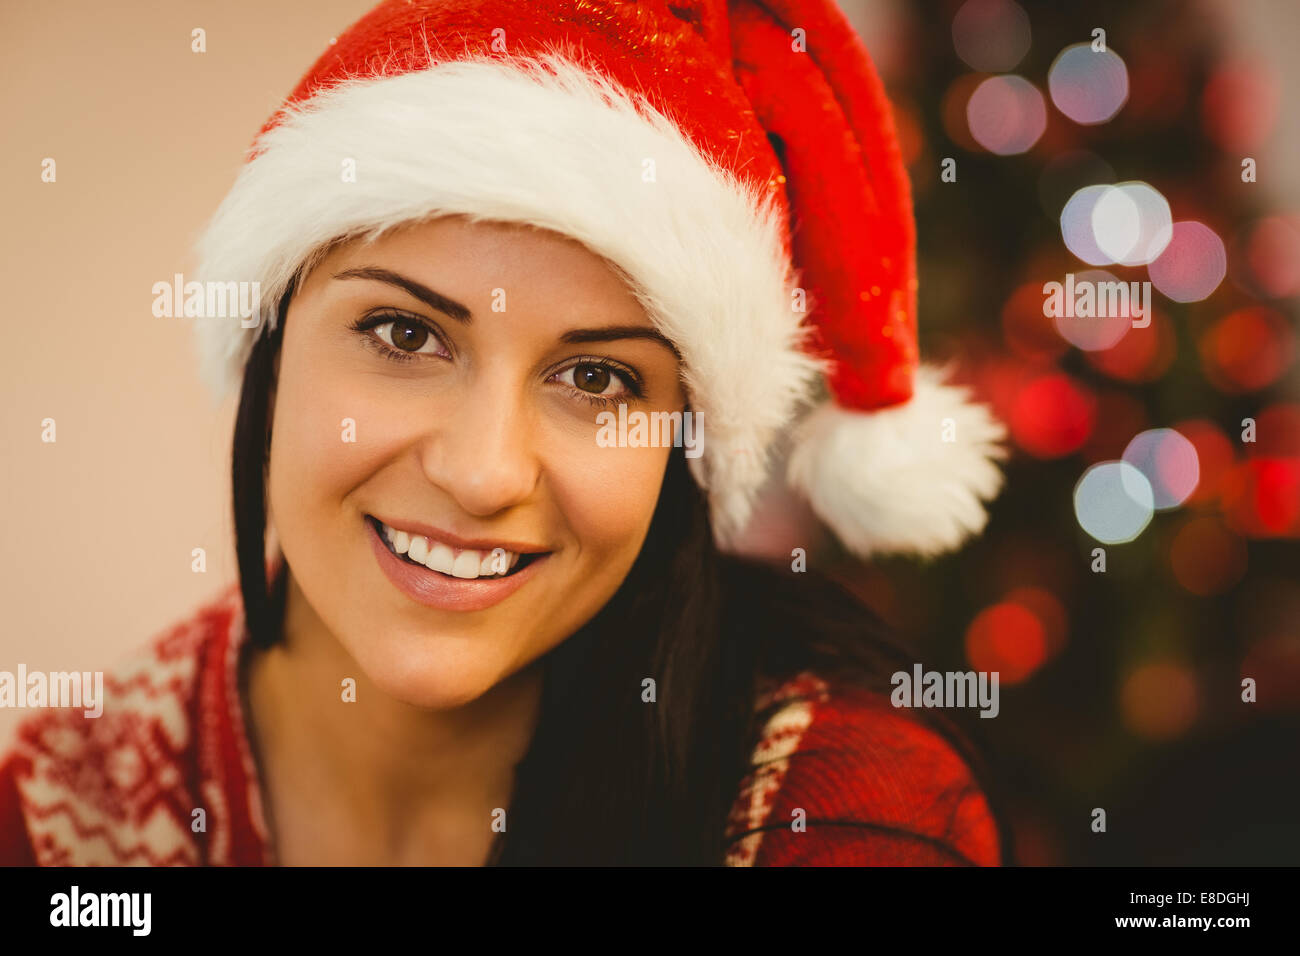 Ambiance festive brunette smiling at camera Banque D'Images